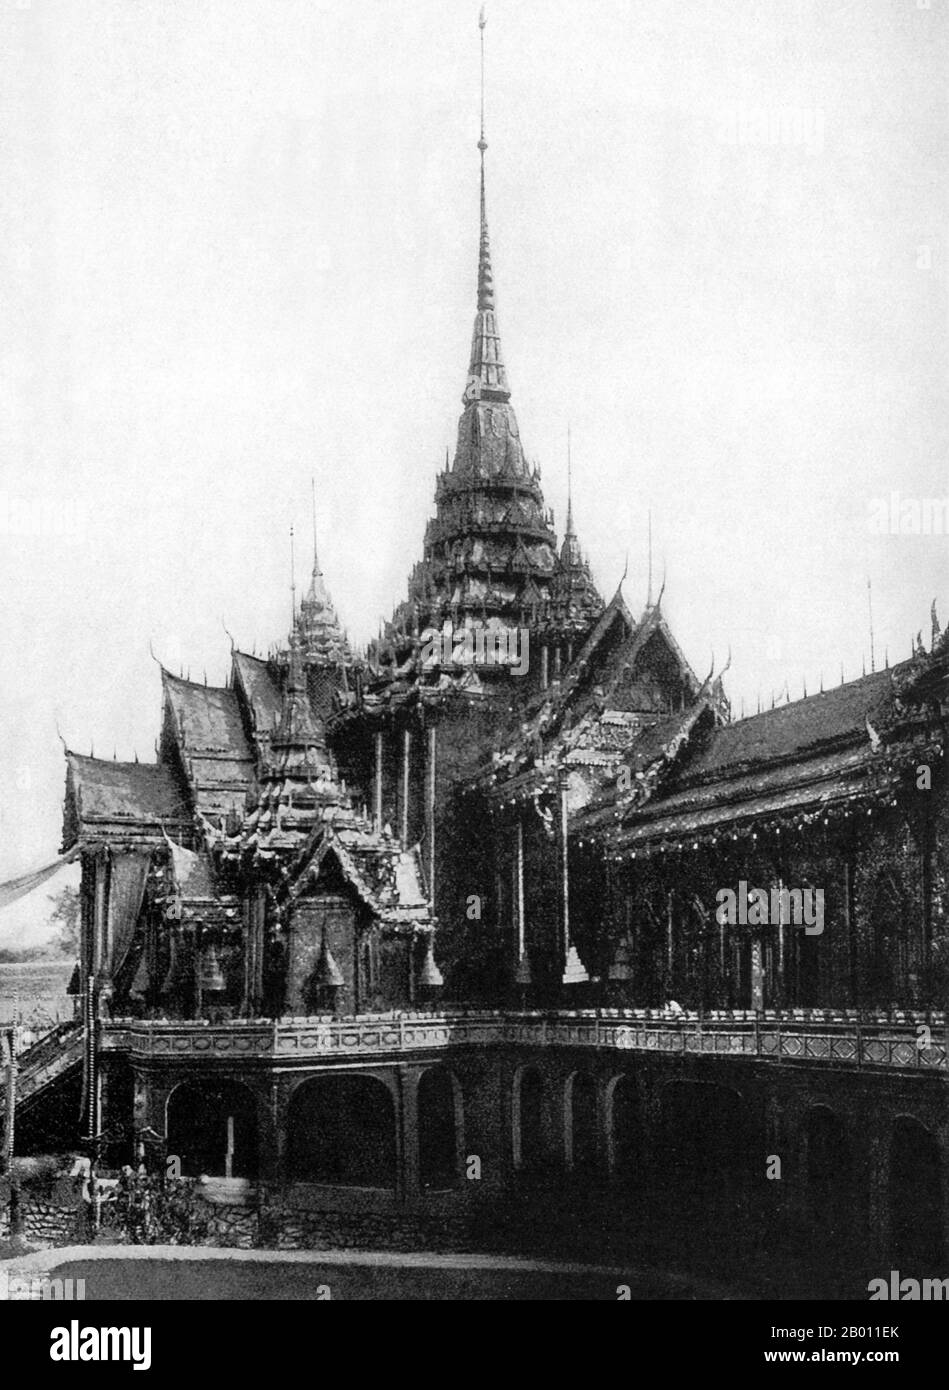 Thailandia: Il luogo della cremazione a Bangkok per un principe durante il regno del re Chulalongkorn (1868-1910). Elaborati padiglioni e templi buddisti sono stati costruiti per i funerali reali nel Siam del XIX secolo. Il corpo del defunto è stato imbalsamato e conservato mentre il luogo della cremazione è stato costruito. Riti funerari e un periodo di lutto potrebbero richiedere mesi o addirittura un anno prima che il funerale abbia avuto luogo. Il corpo imbalsamato è stato poi posto in una posizione inginocchiata in un'urna d'oro su un'alta biera all'interno di un edificio ornato da cremare. Foto Stock